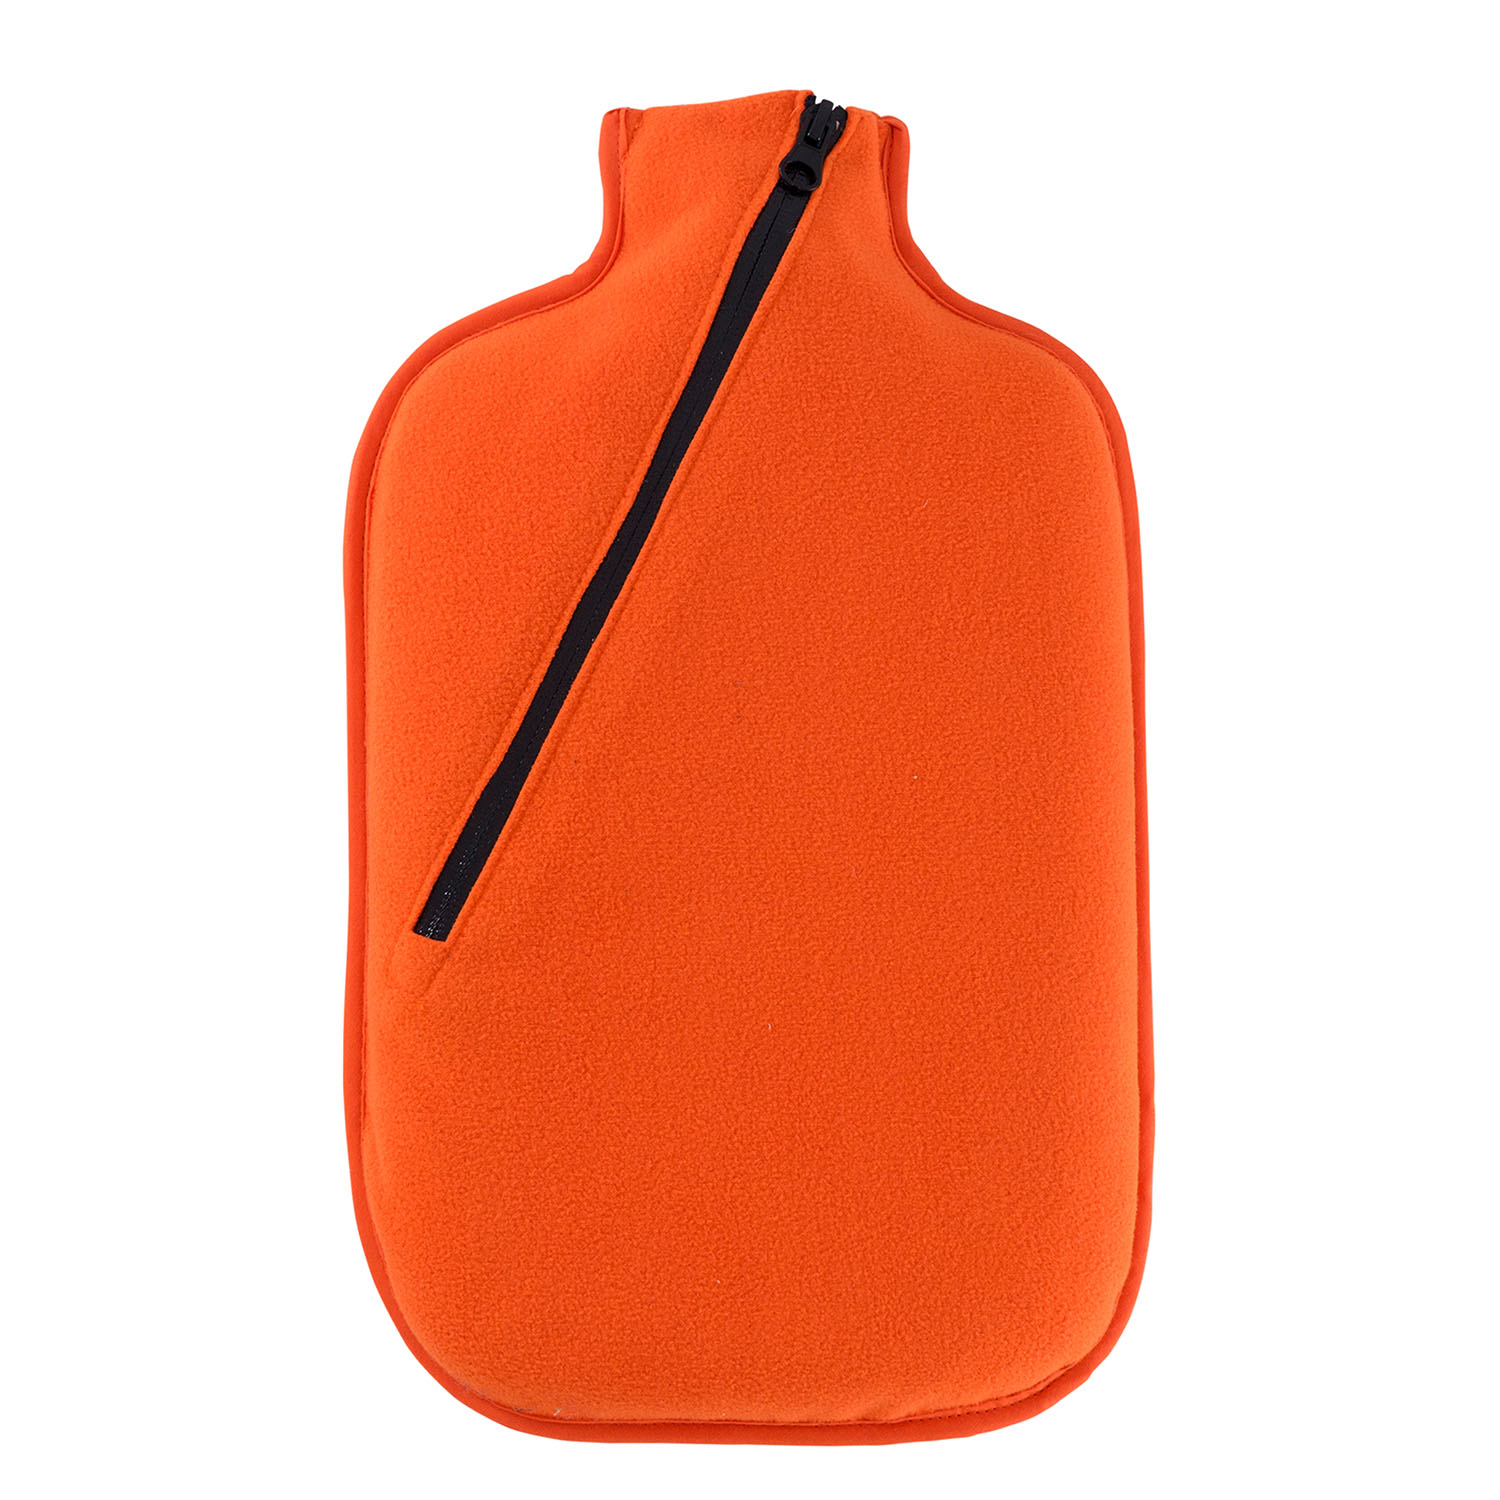 Öko-Wärmflasche 2,0 l mit Softshell-Bezug orange